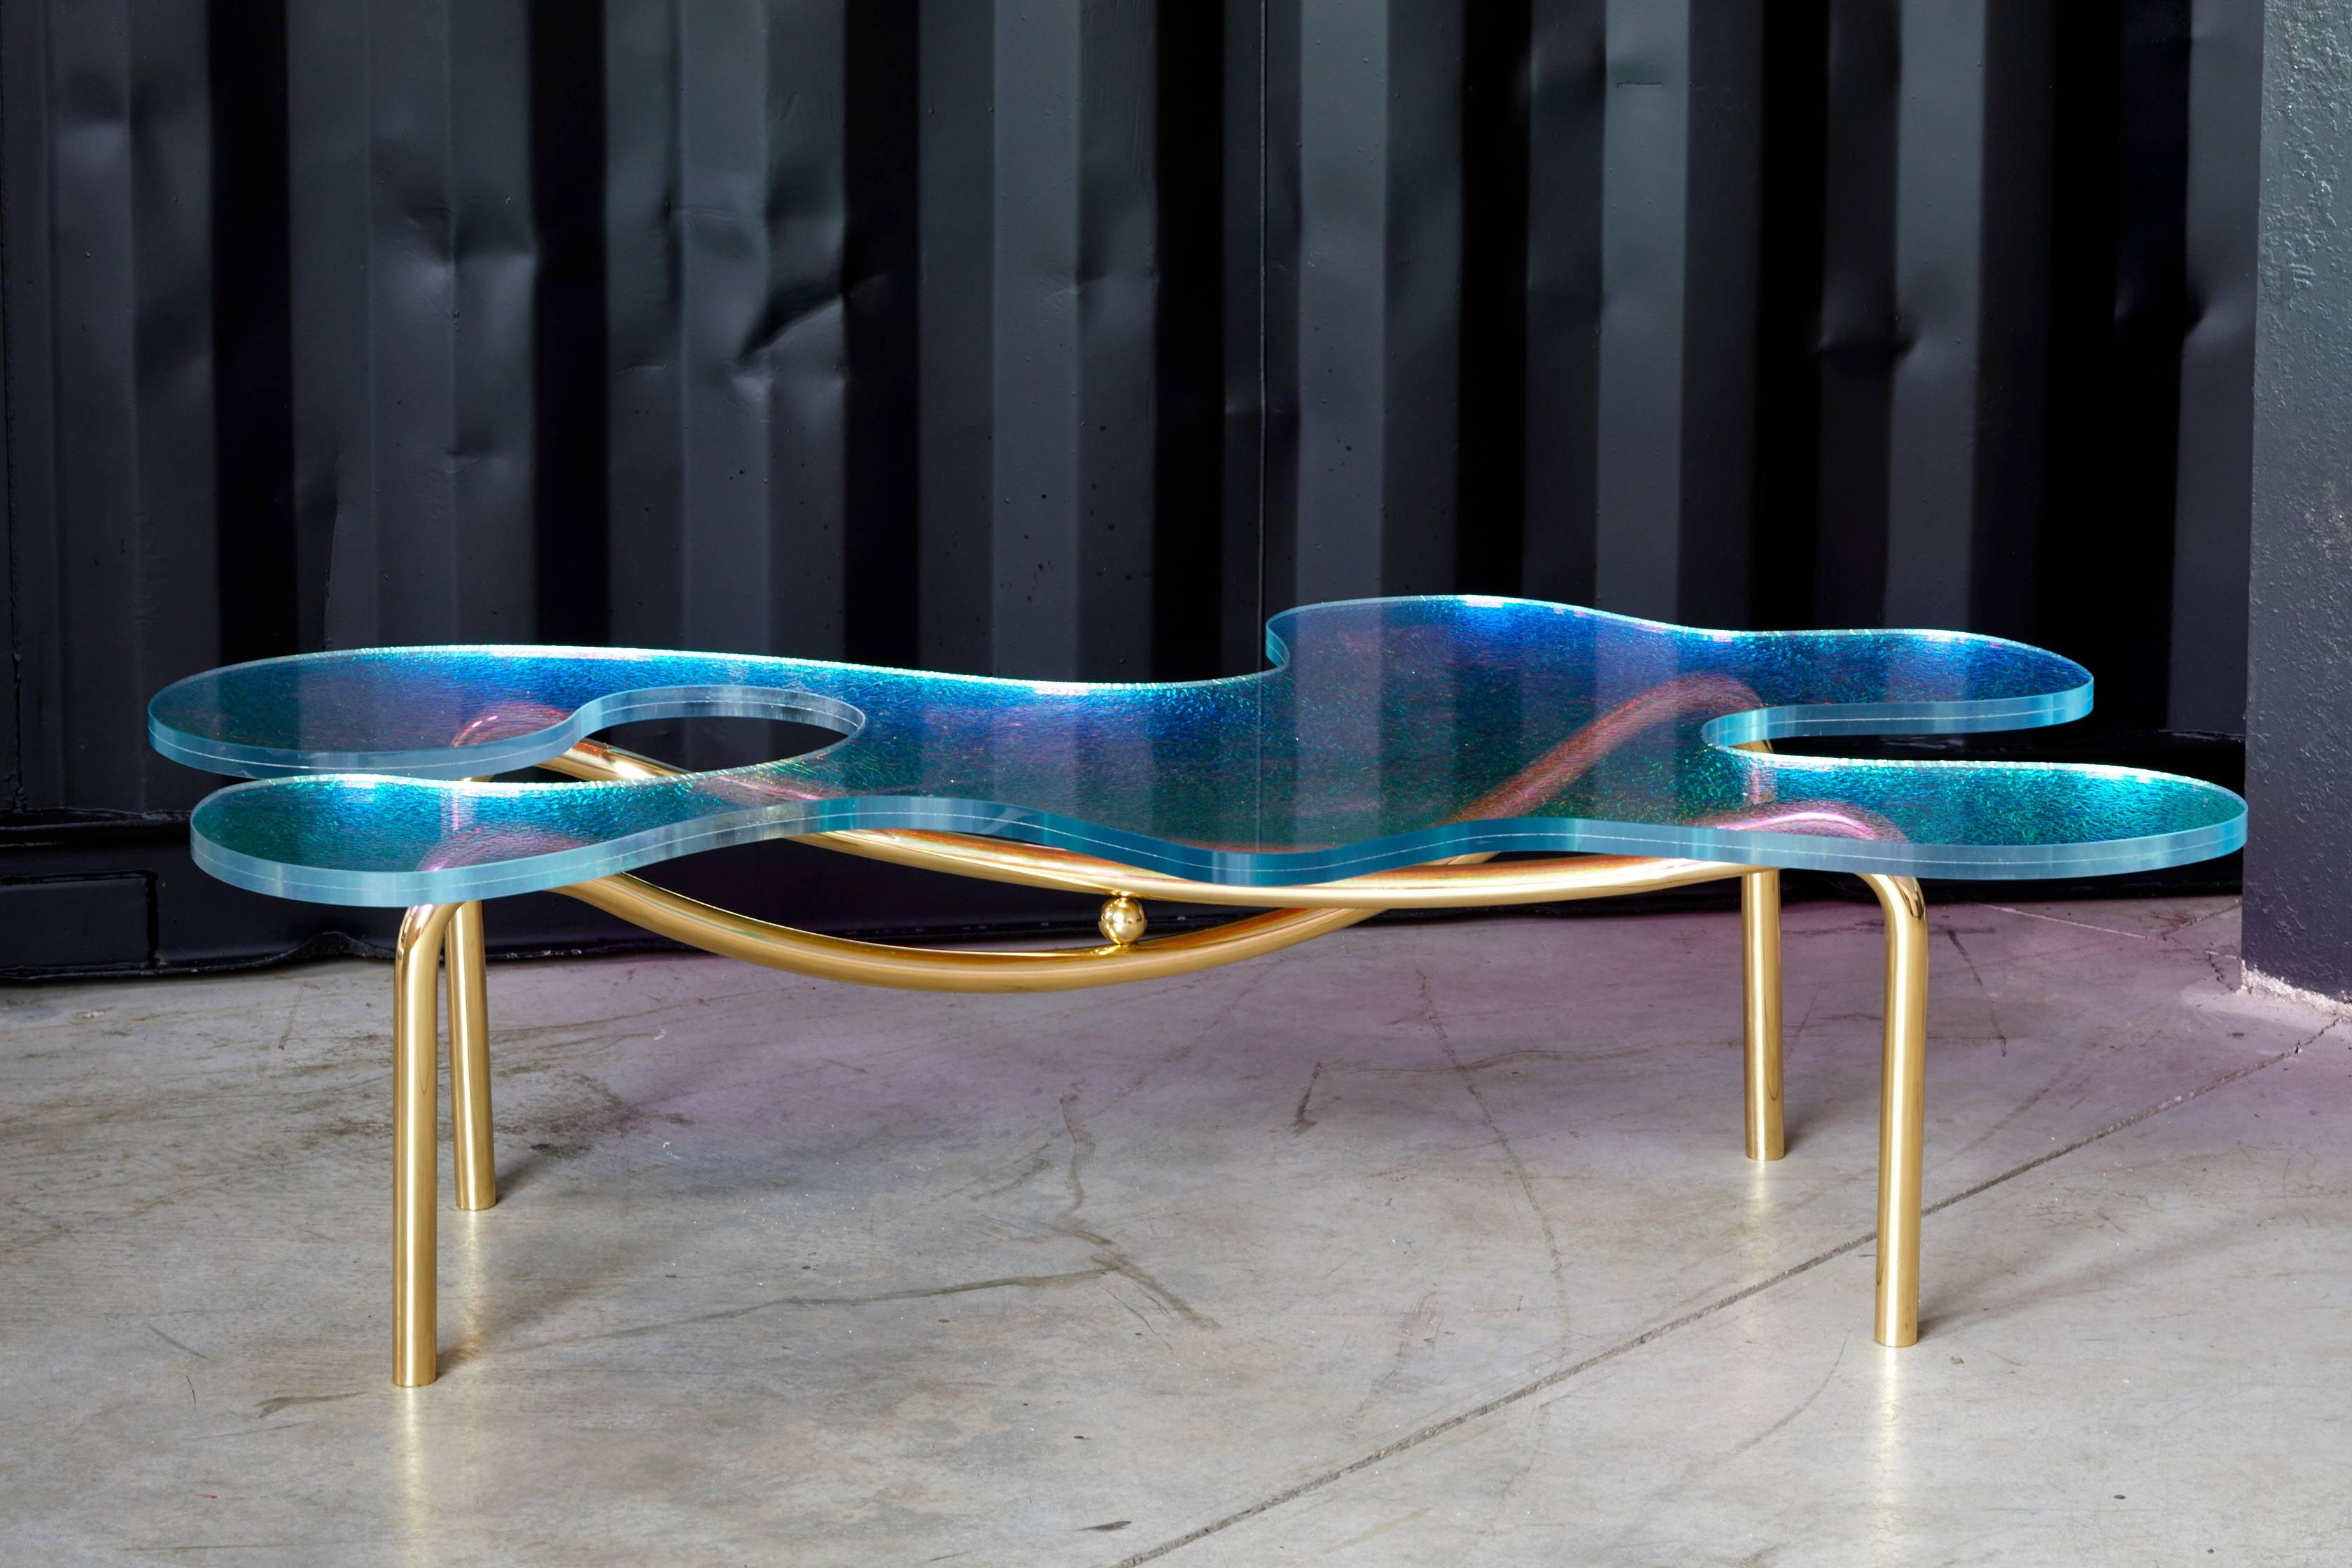 La table basse Picasso a été construite et conçue par l'artiste Troy Smith. 

Cette table basse contemporaine est fabriquée à partir de matériaux de la plus haute qualité. La table basse a été inspirée par Picasso et ses peintures abstraites.